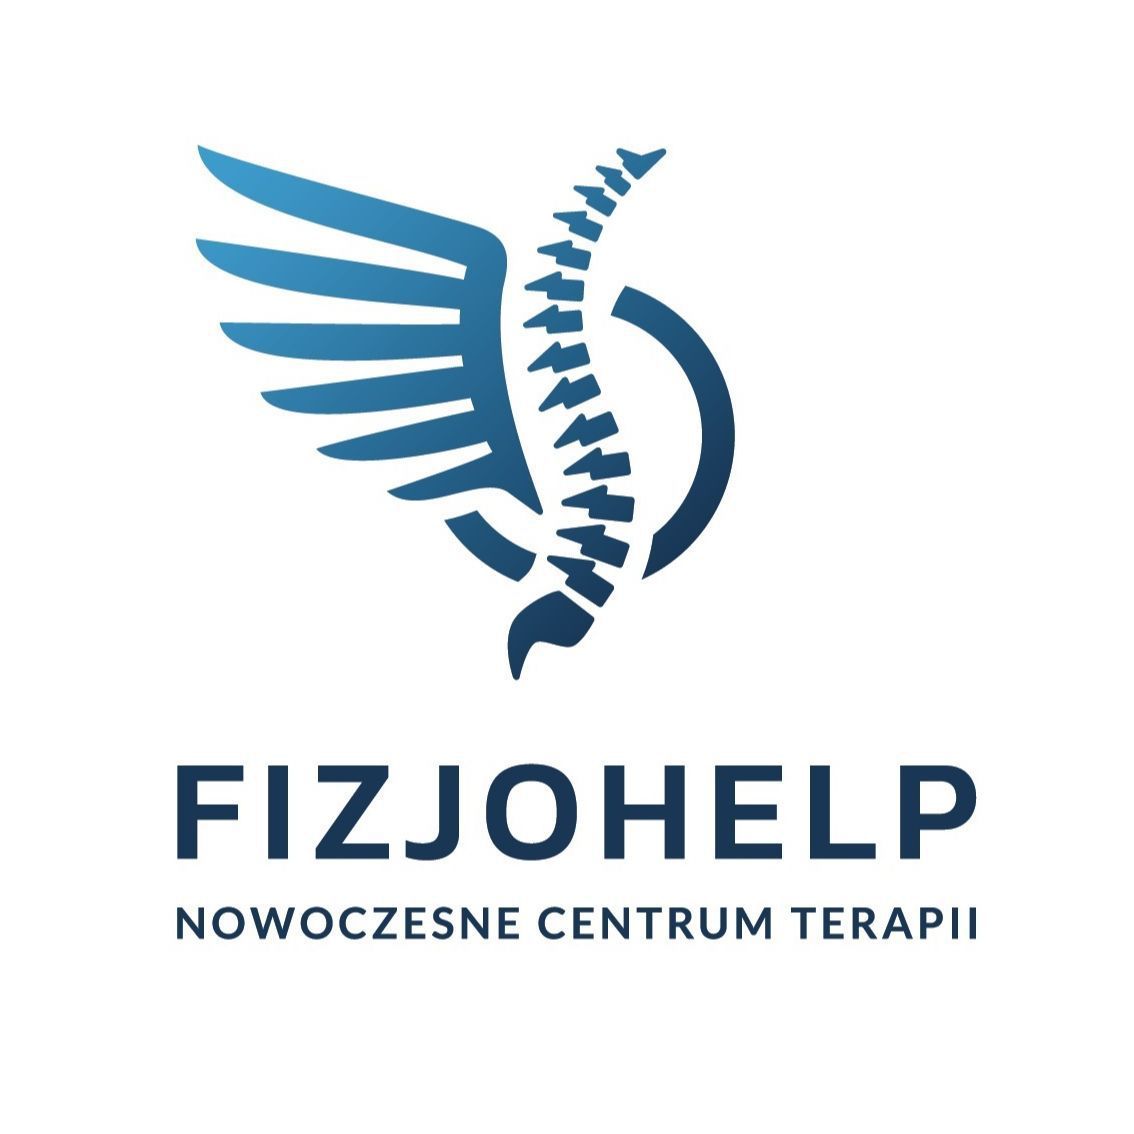 FizjoHelp - Nowoczesne Centrum Terapii, Gen. Kazimierza Sosnkowskiego 5H, 02-495, Warszawa, Ursus